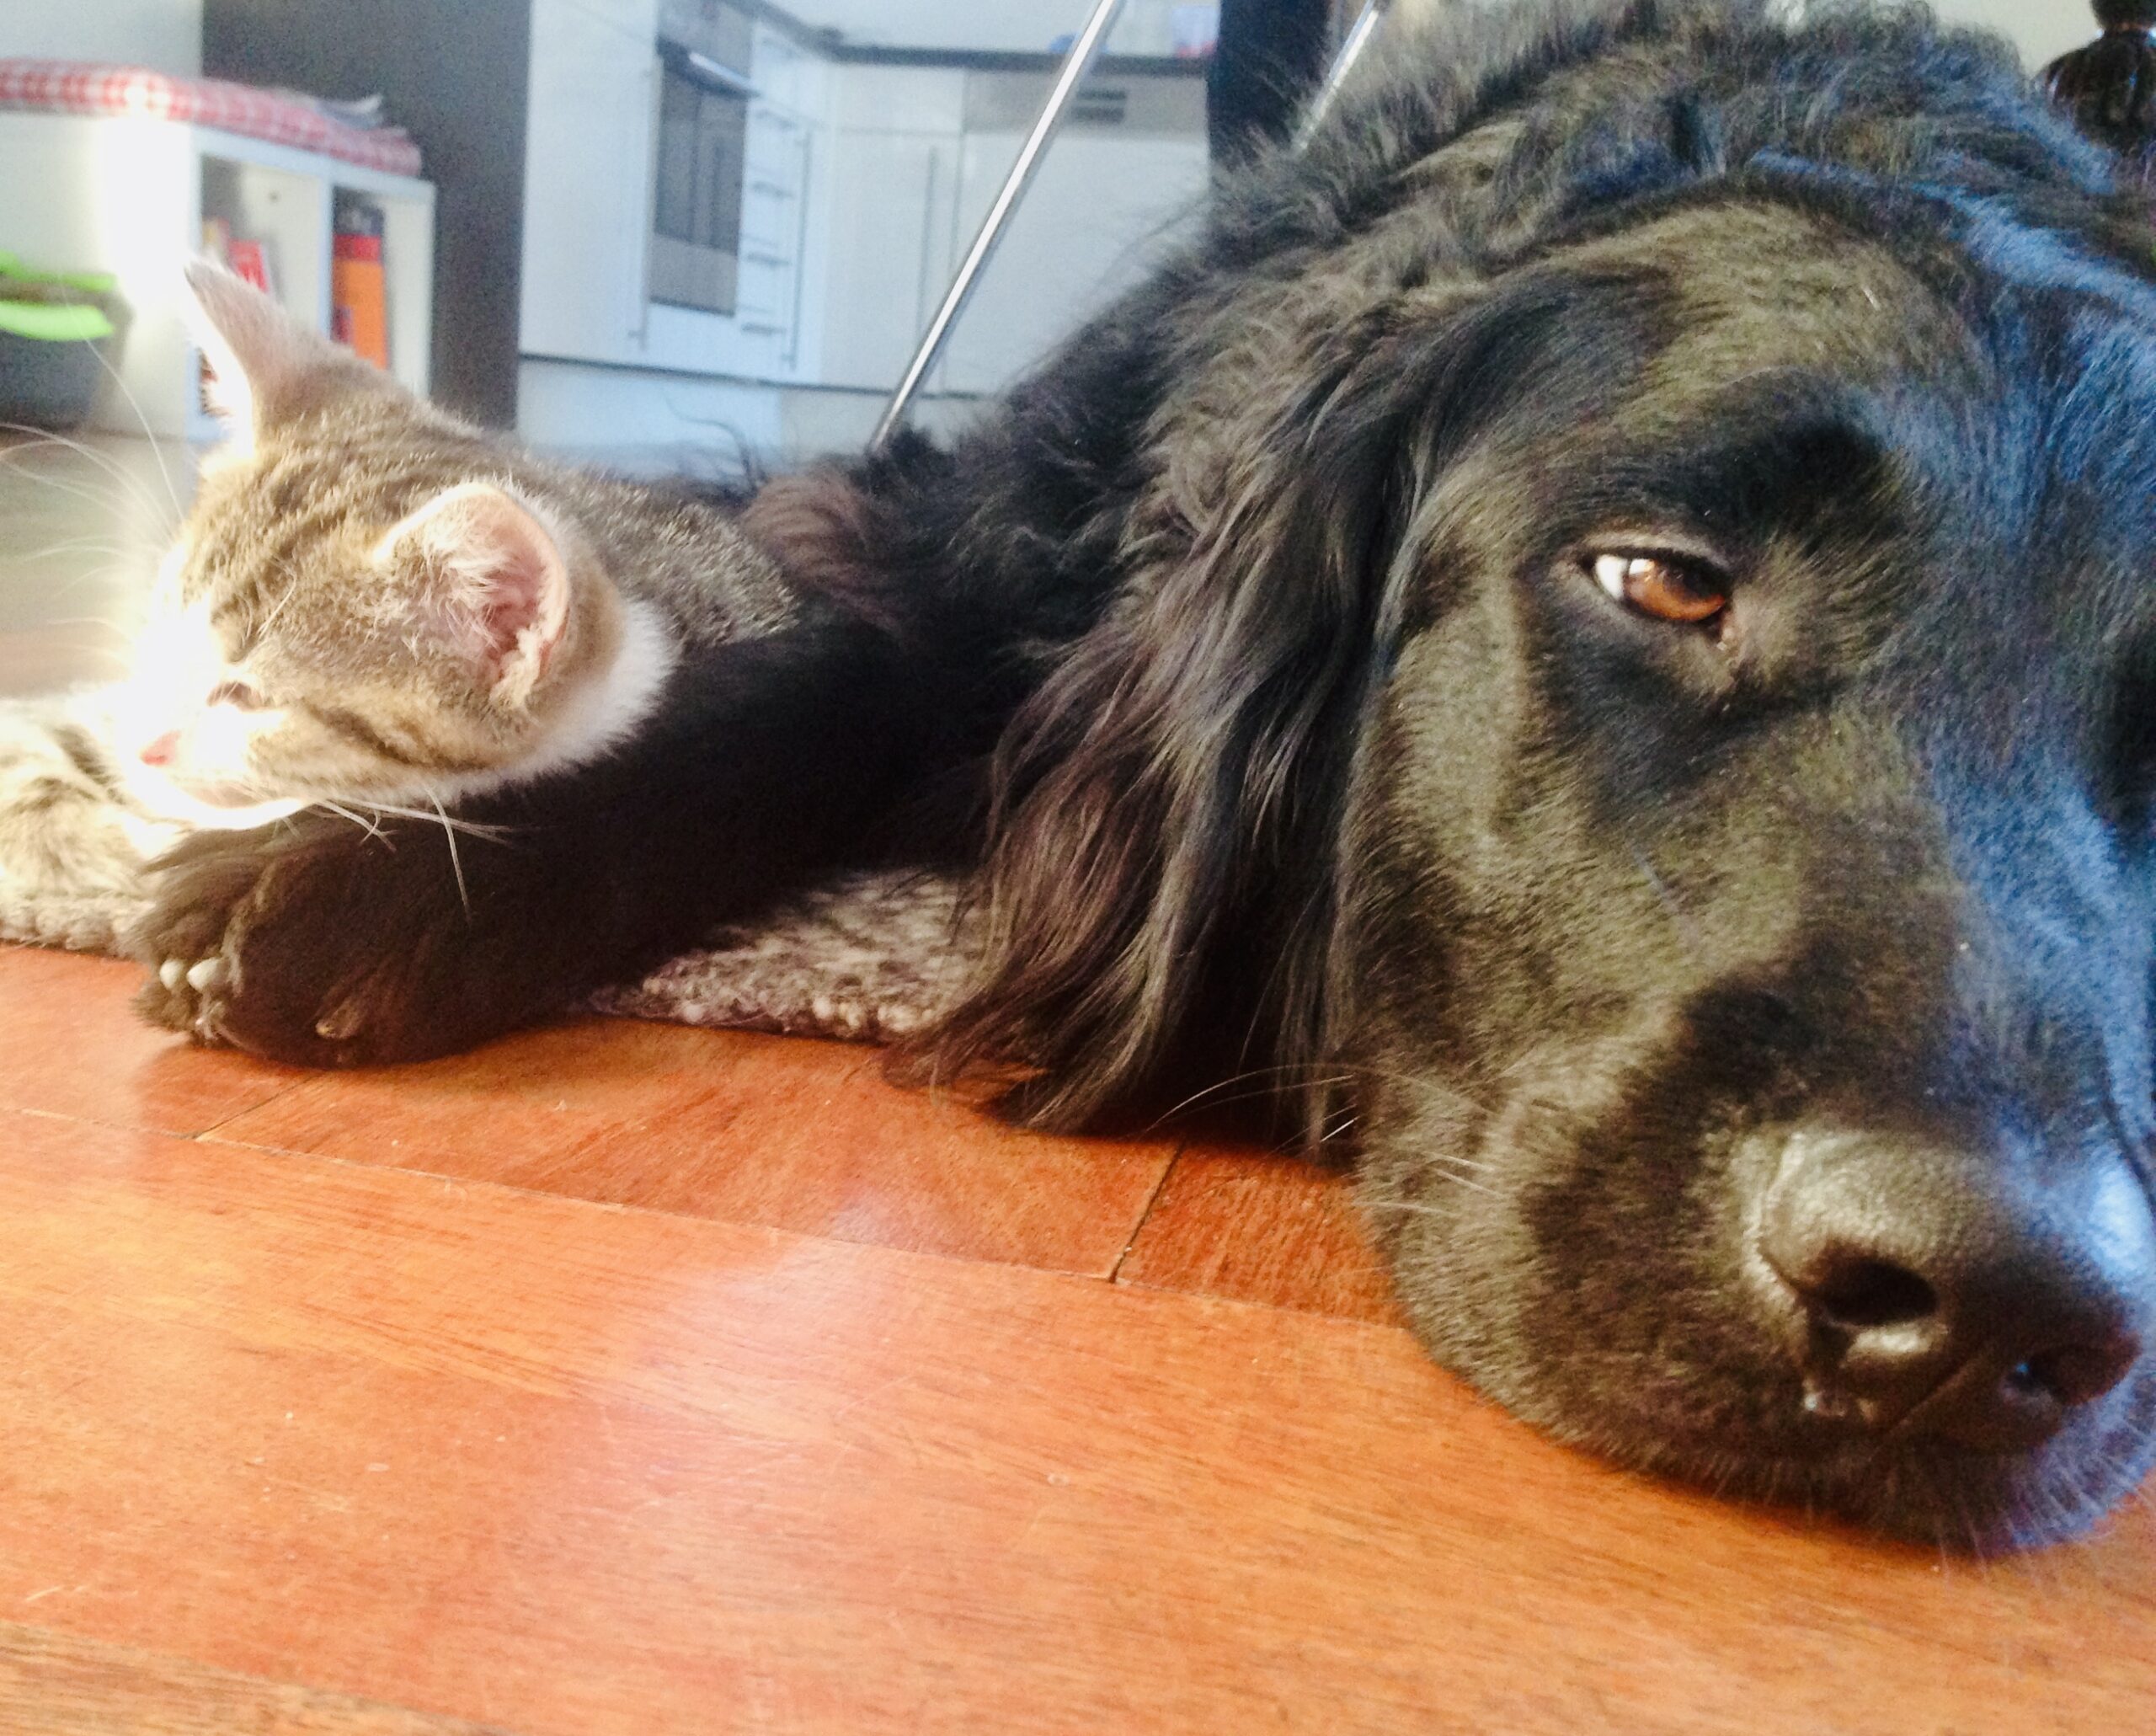 Foto: Katze und Hund liegen beieinander; Bild zum Thema Low Performer